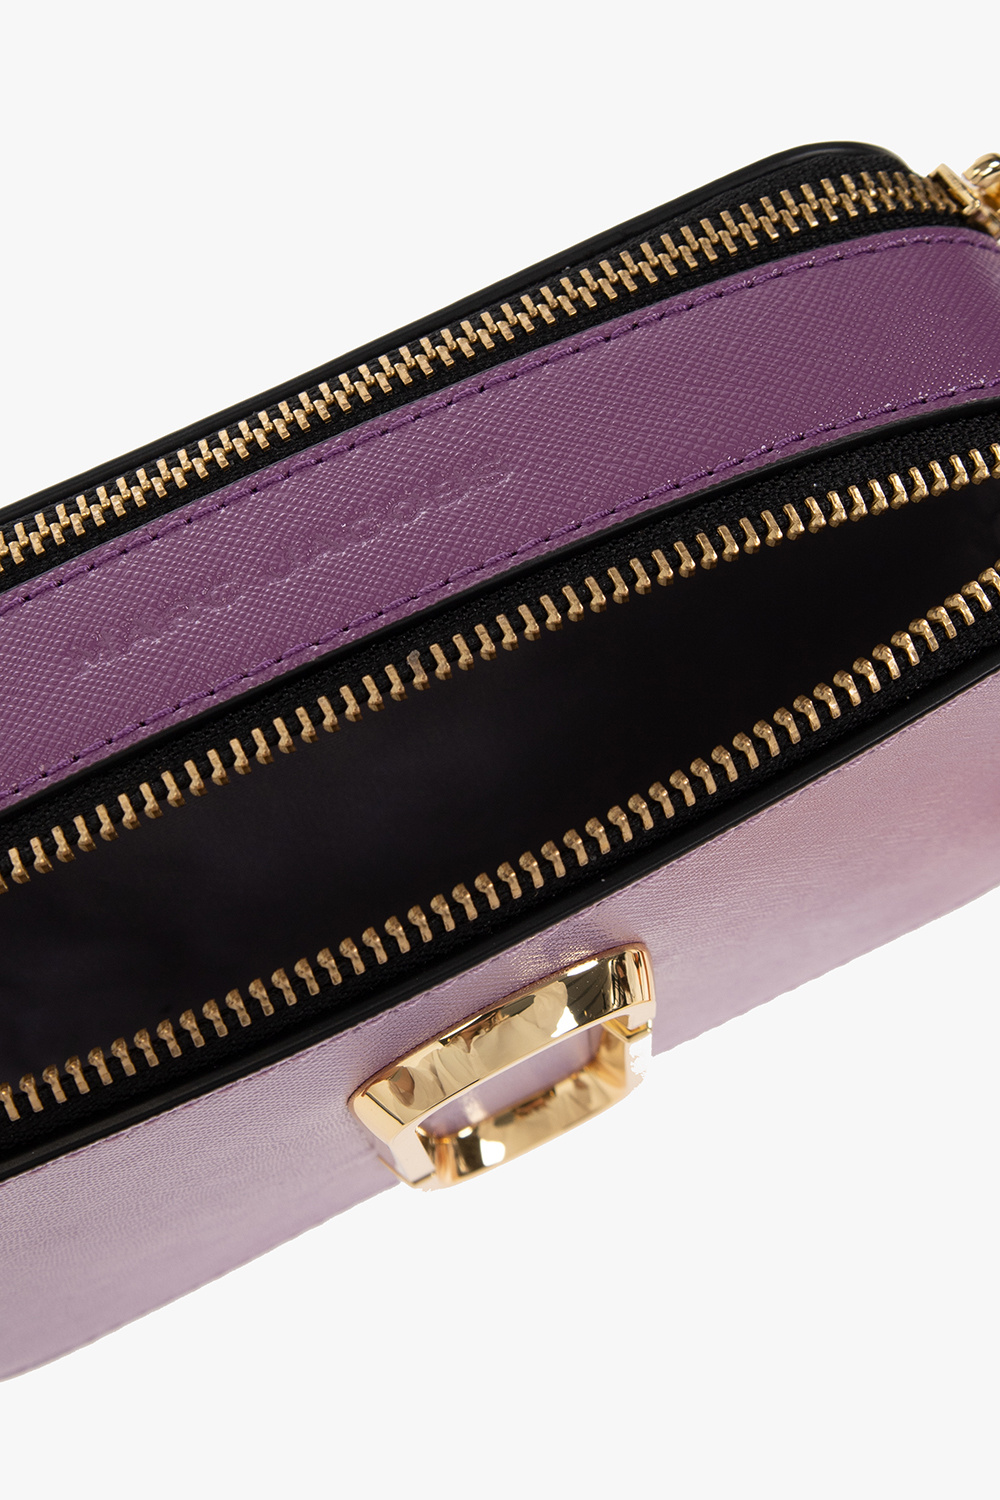 Purple 'The Snapshot Colorblock' shoulder bag Marc Jacobs - Vitkac TW